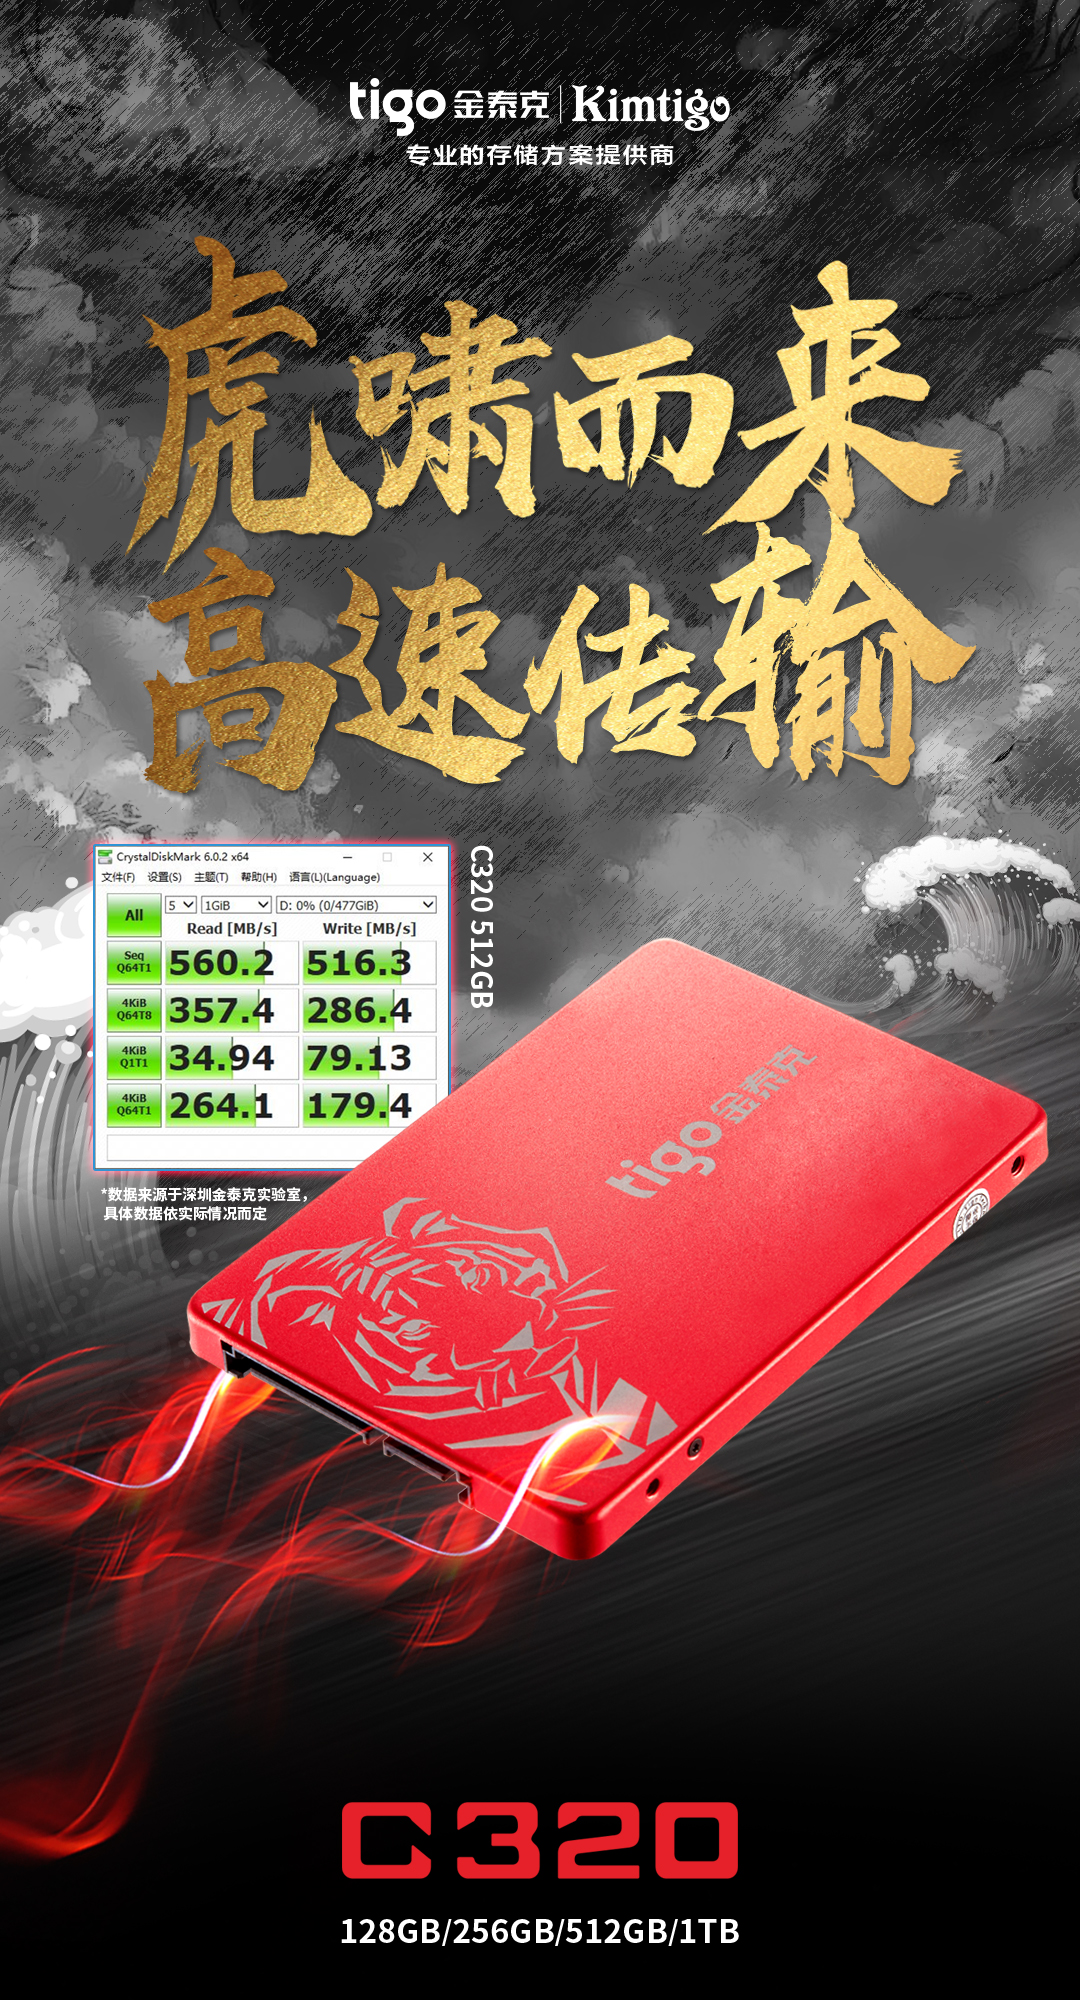 破晓时刻，自主新品！深圳金泰克国产化C320 SSD震撼来袭！